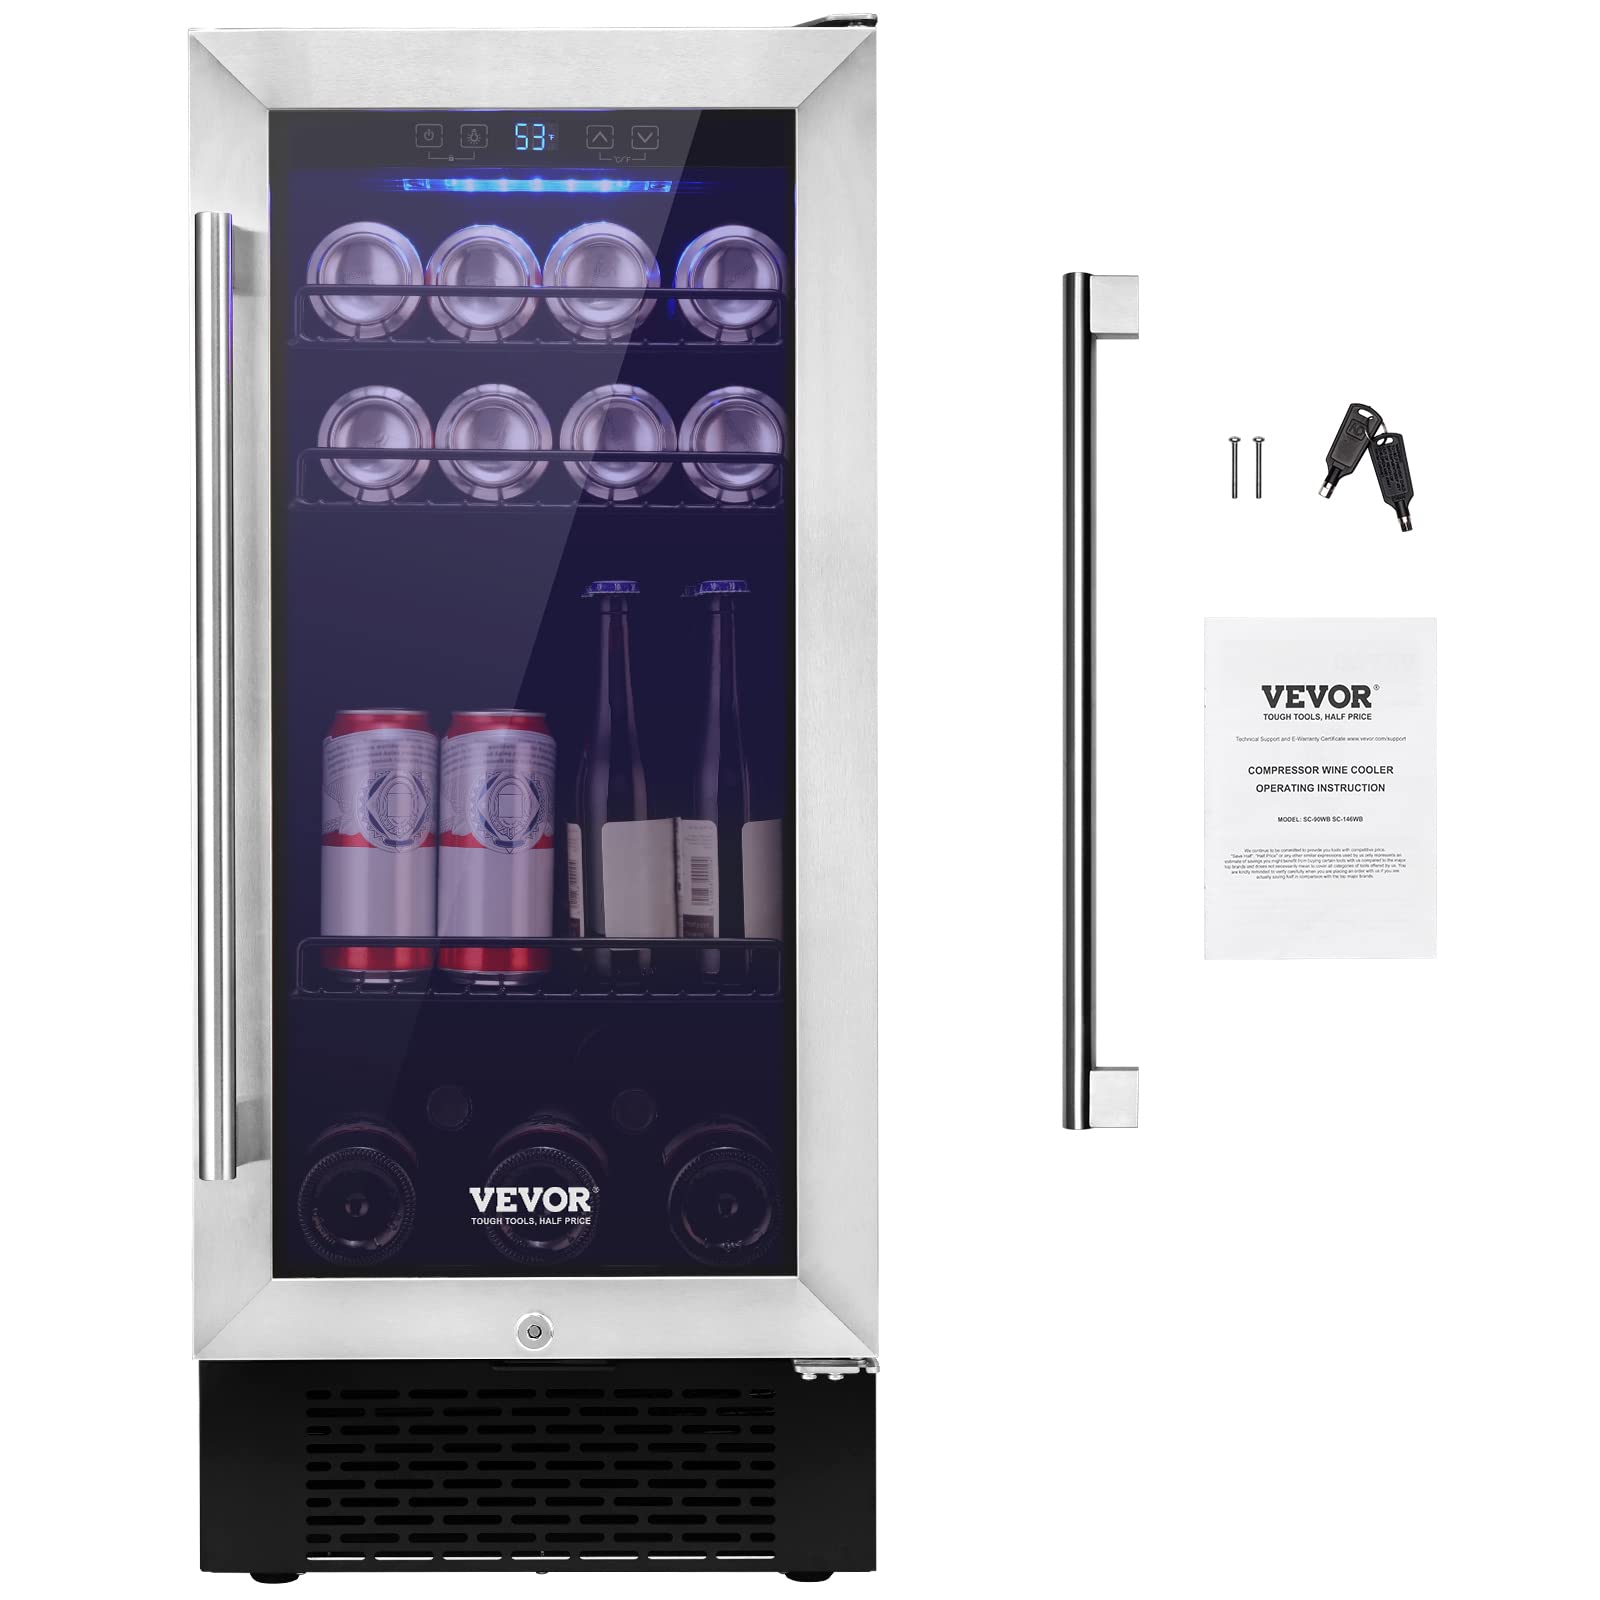 VEVOR 96 Cans Built-in or Freestanding Wine Refrigerator Beverage Cooler with Blue LED Light, Silver